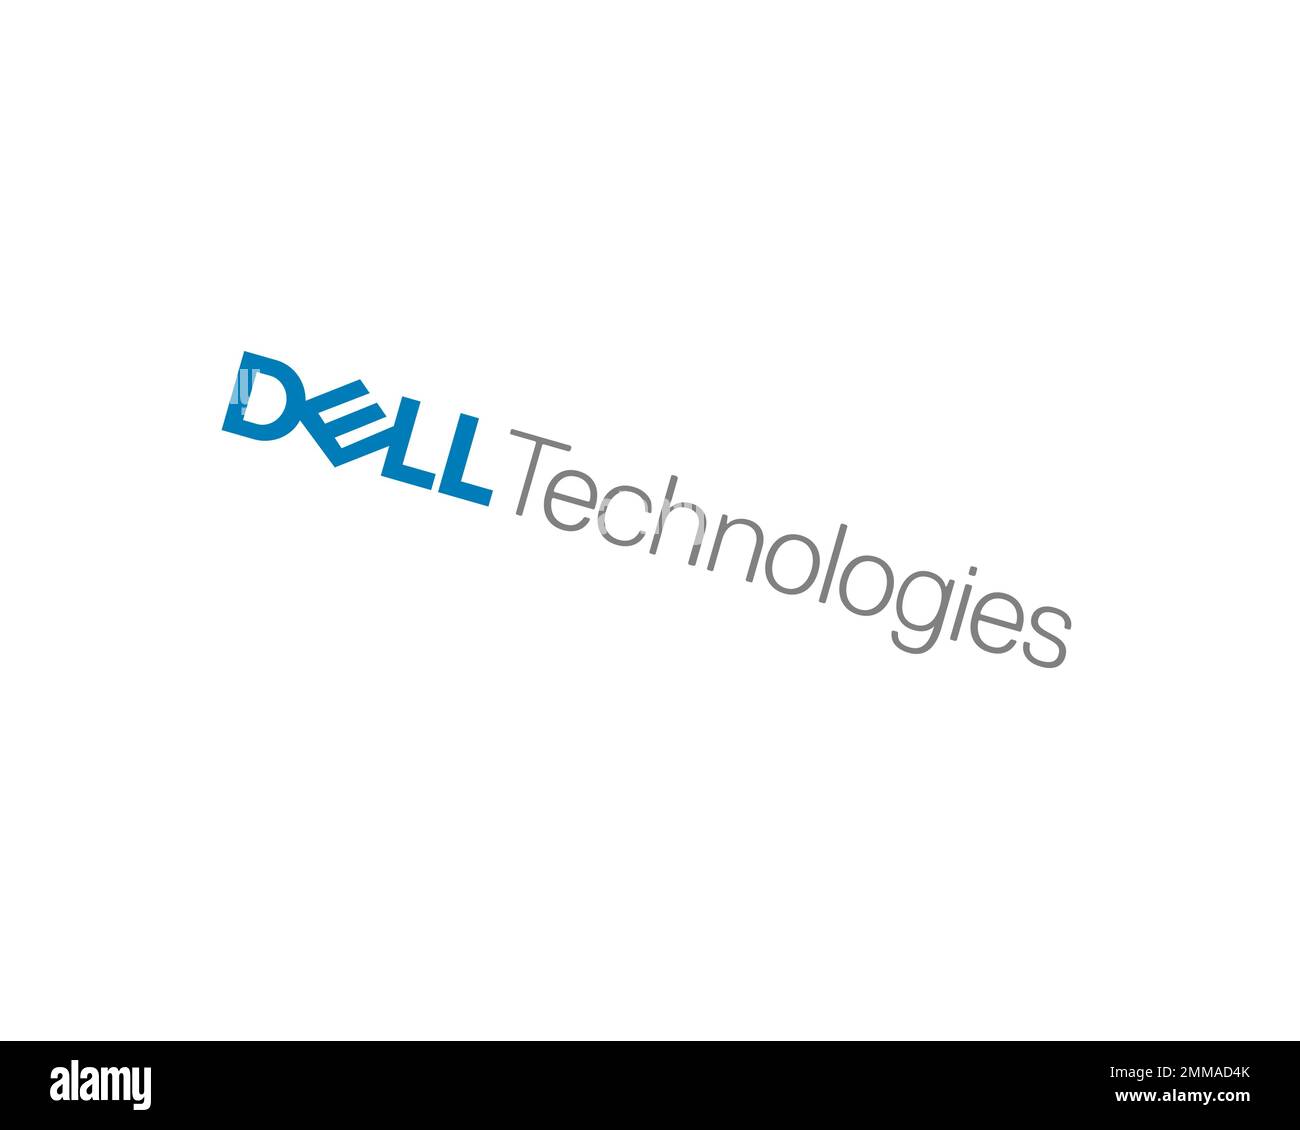 Dell Technologies, gedreht, weißer Hintergrund, Logo, Markenname Stockfoto